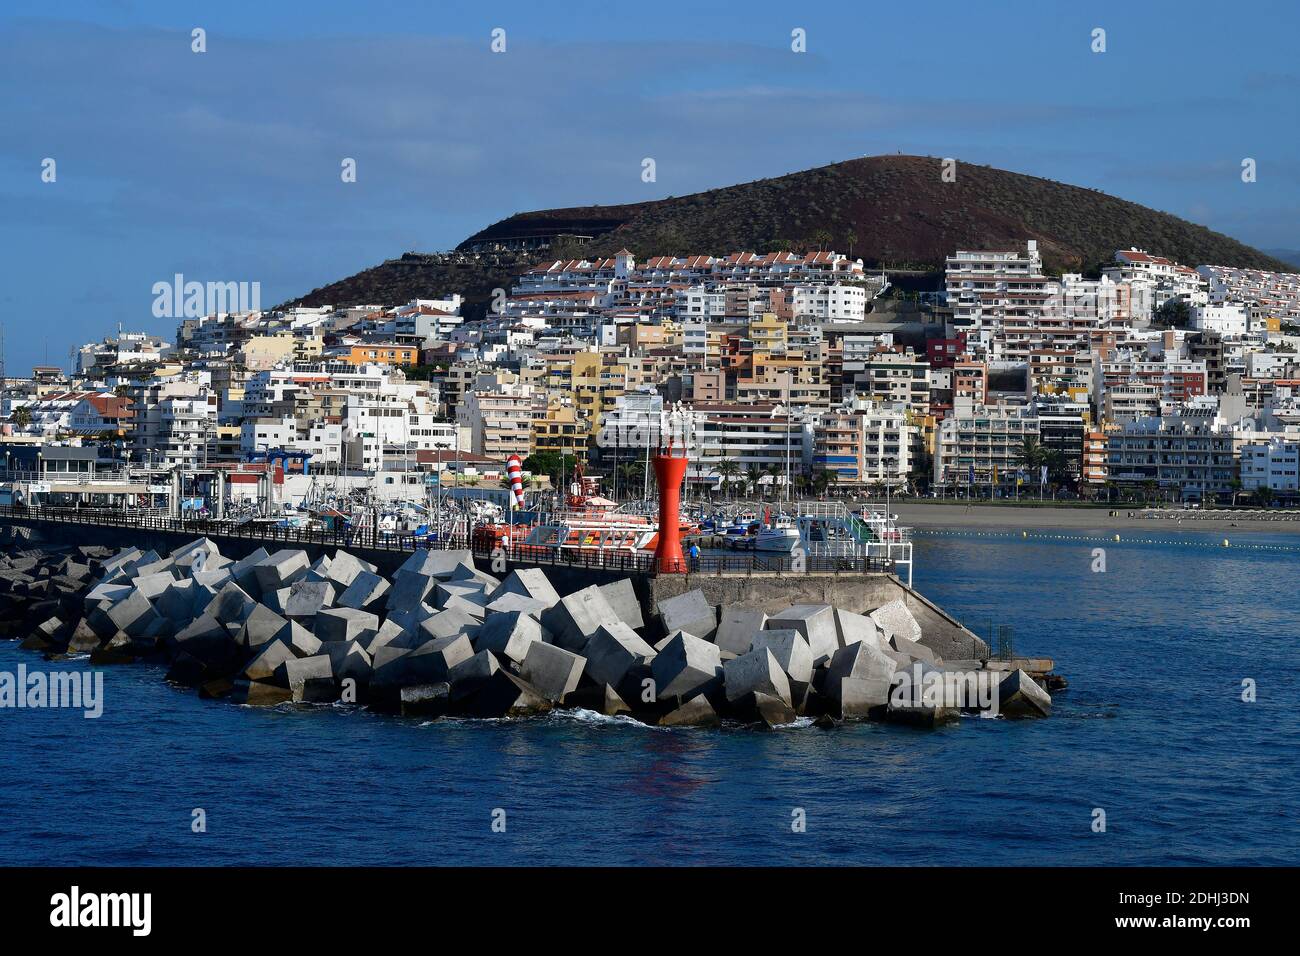 Tenerife, Isole Canarie, Spagna - 10 aprile 2018: Molo con pavimentazioni in cemento nel porto di Los Cristianos Foto Stock